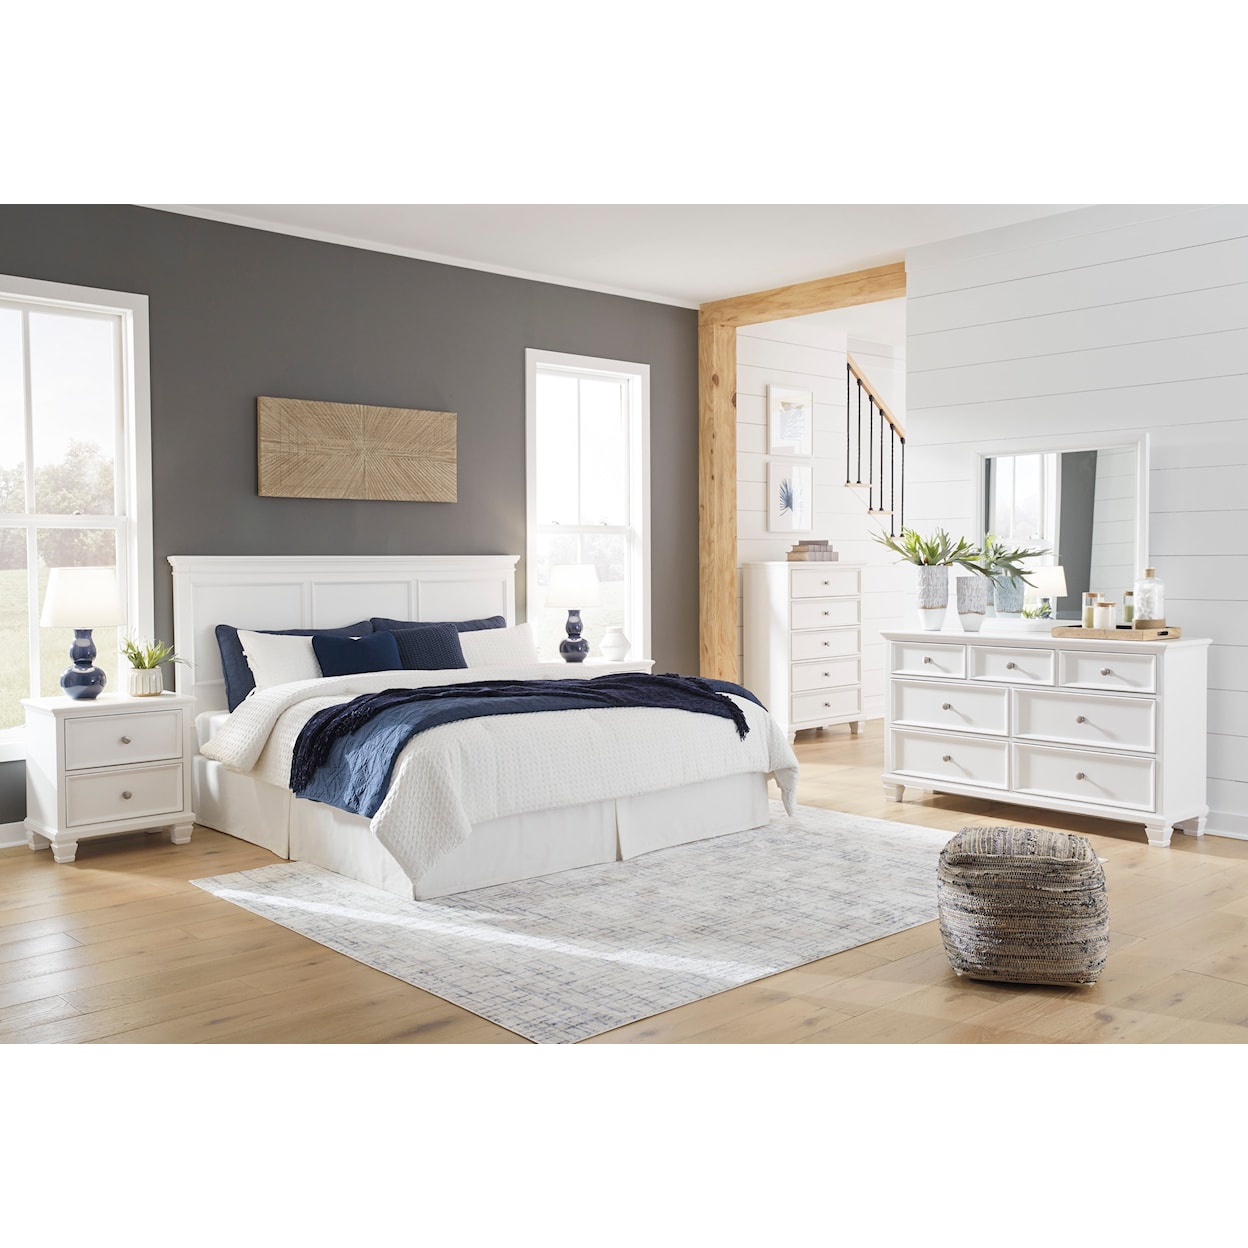 Ashley Furniture Signature Design Fortman King/Cal King Bedroom Set